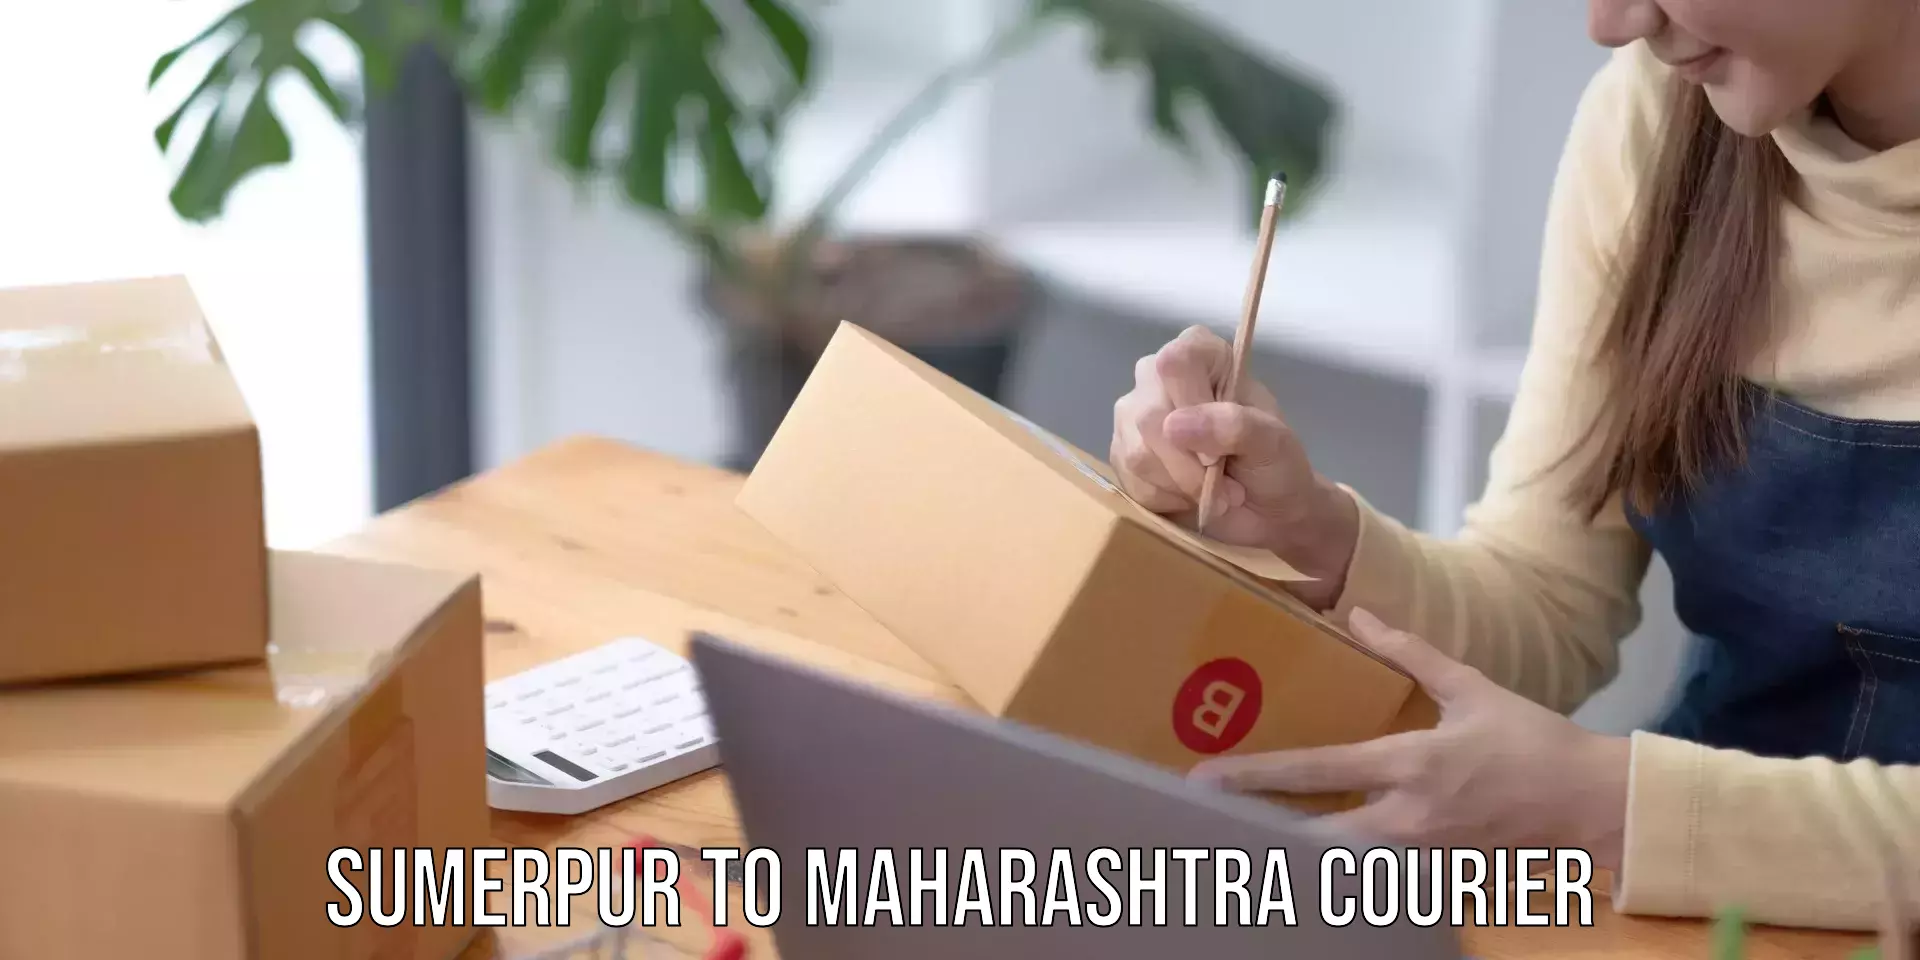 Speedy delivery service Sumerpur to Maharashtra